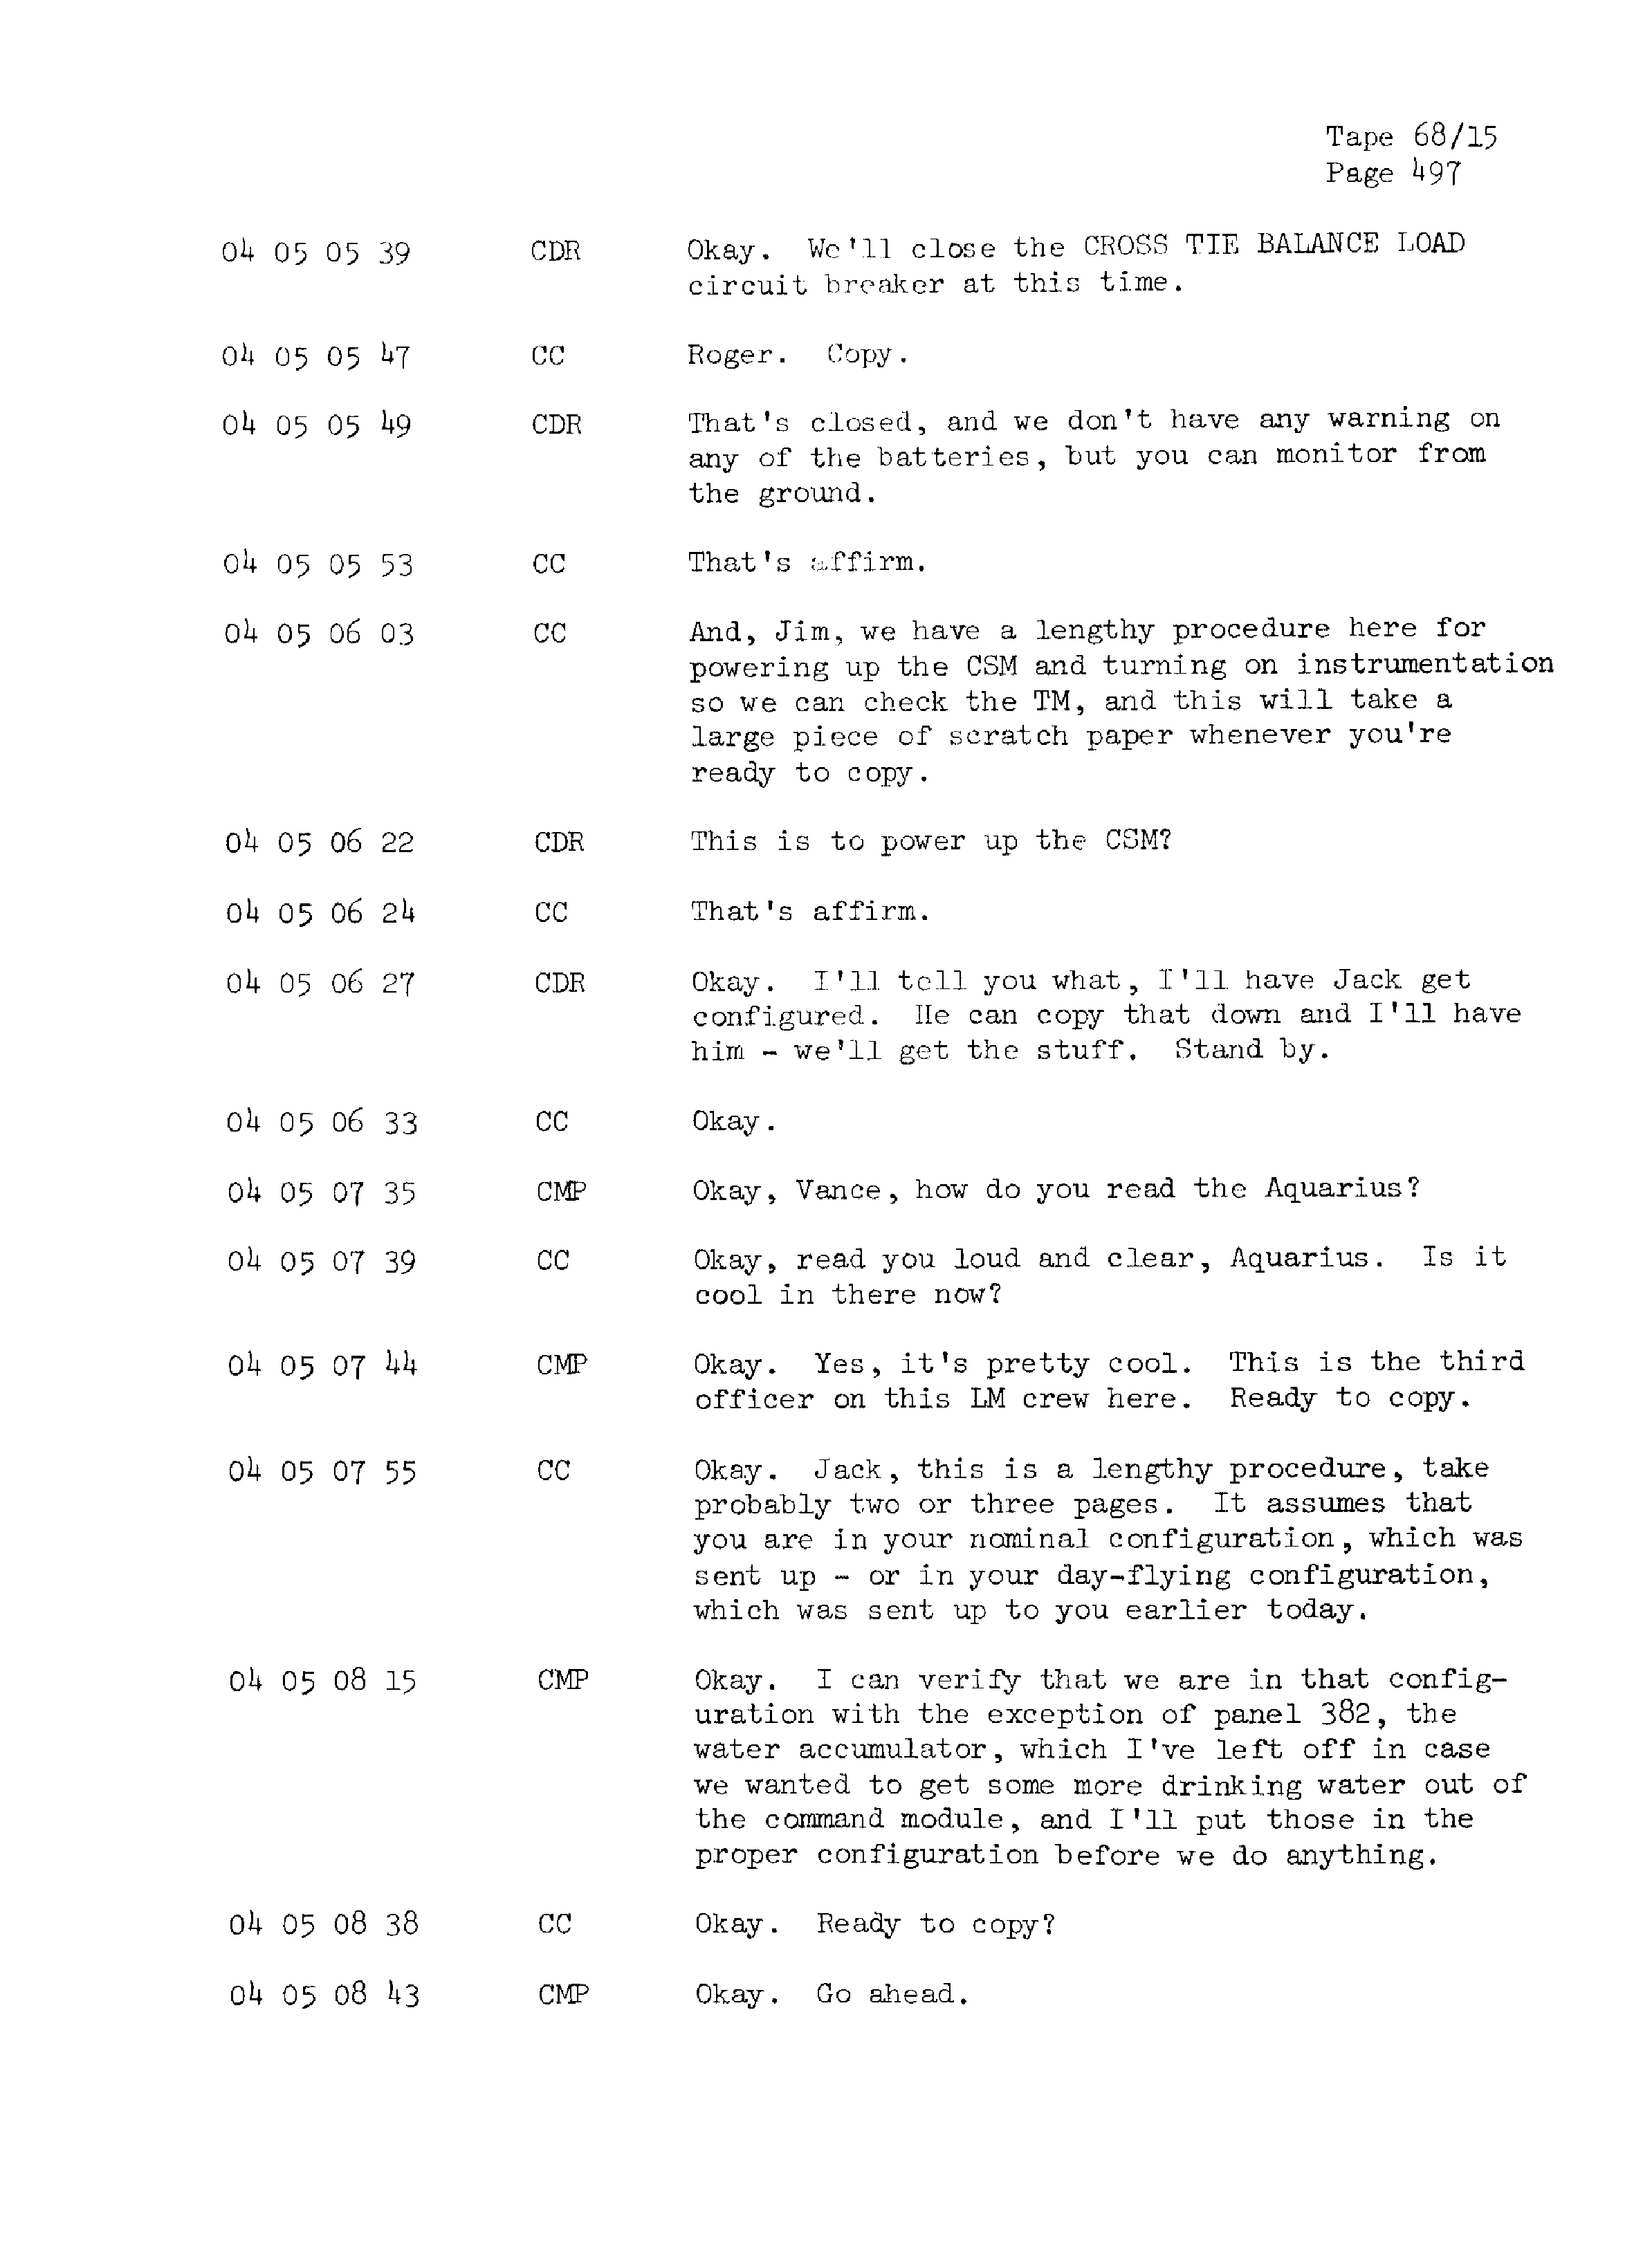 Page 504 of Apollo 13’s original transcript